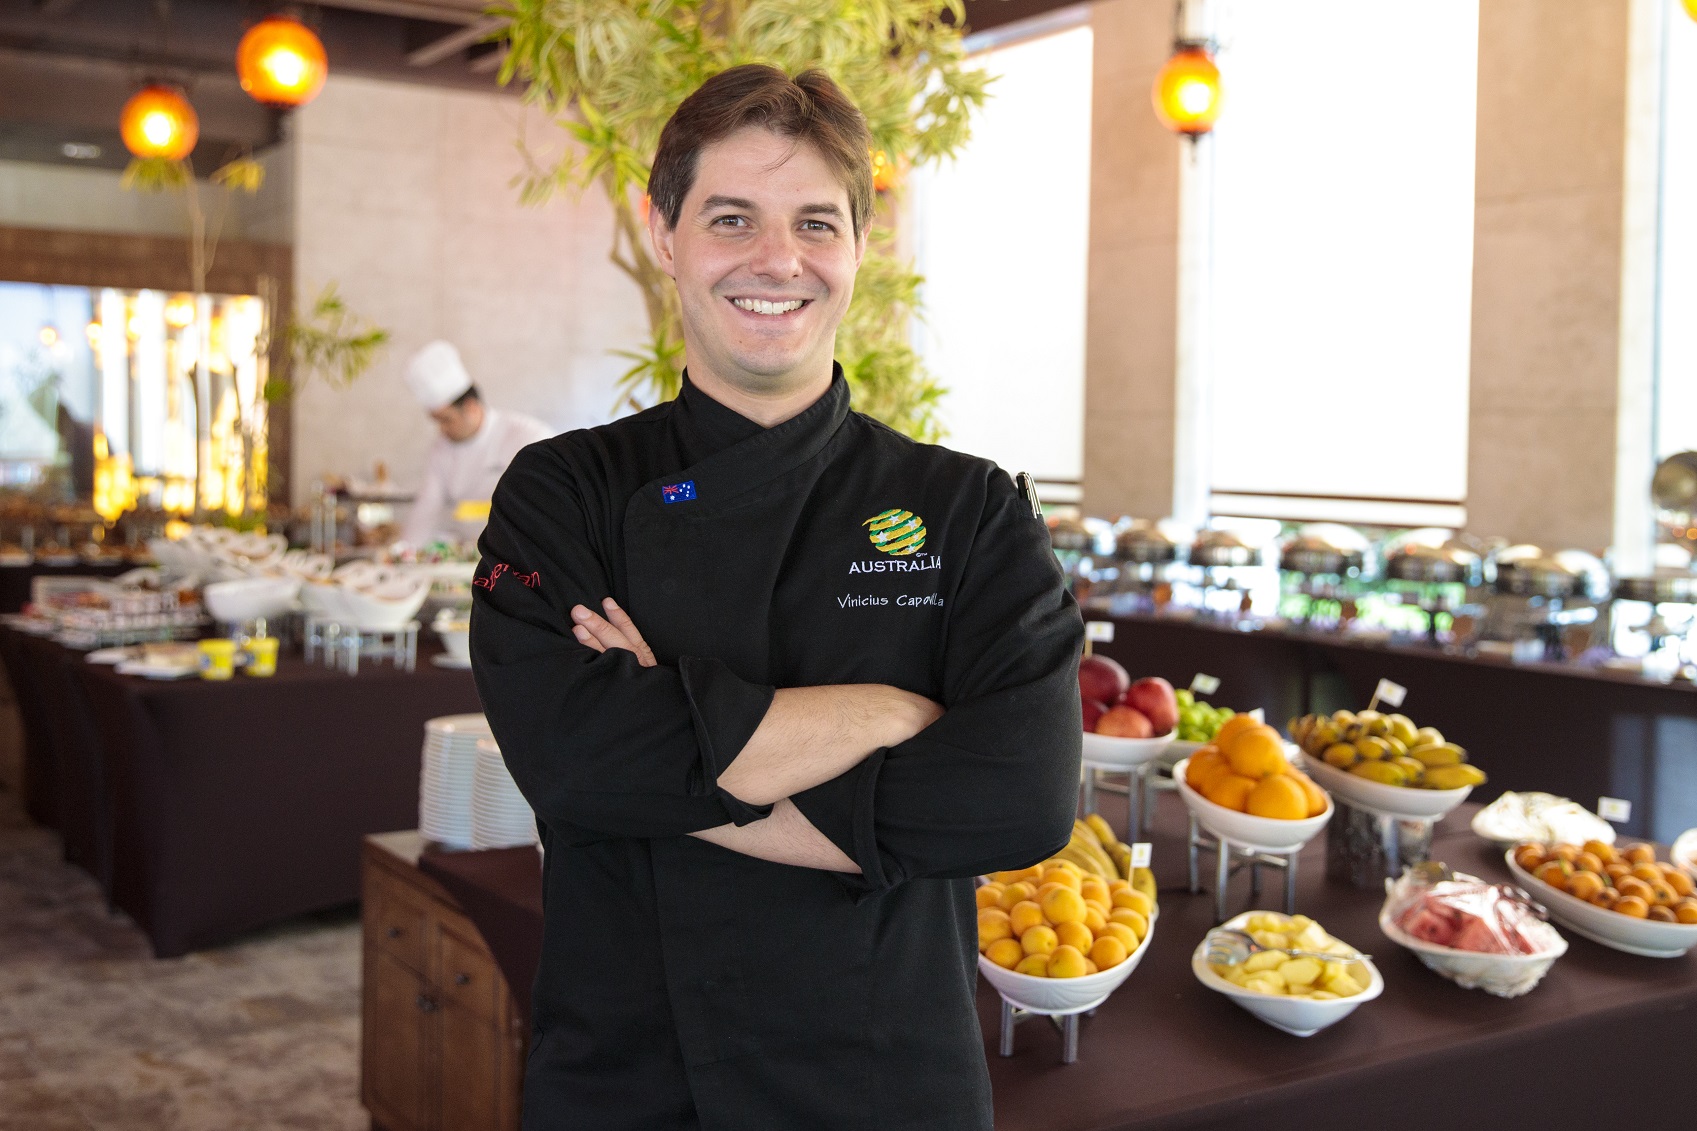 Vini Capovilla is the Socceroos and Matildas chef